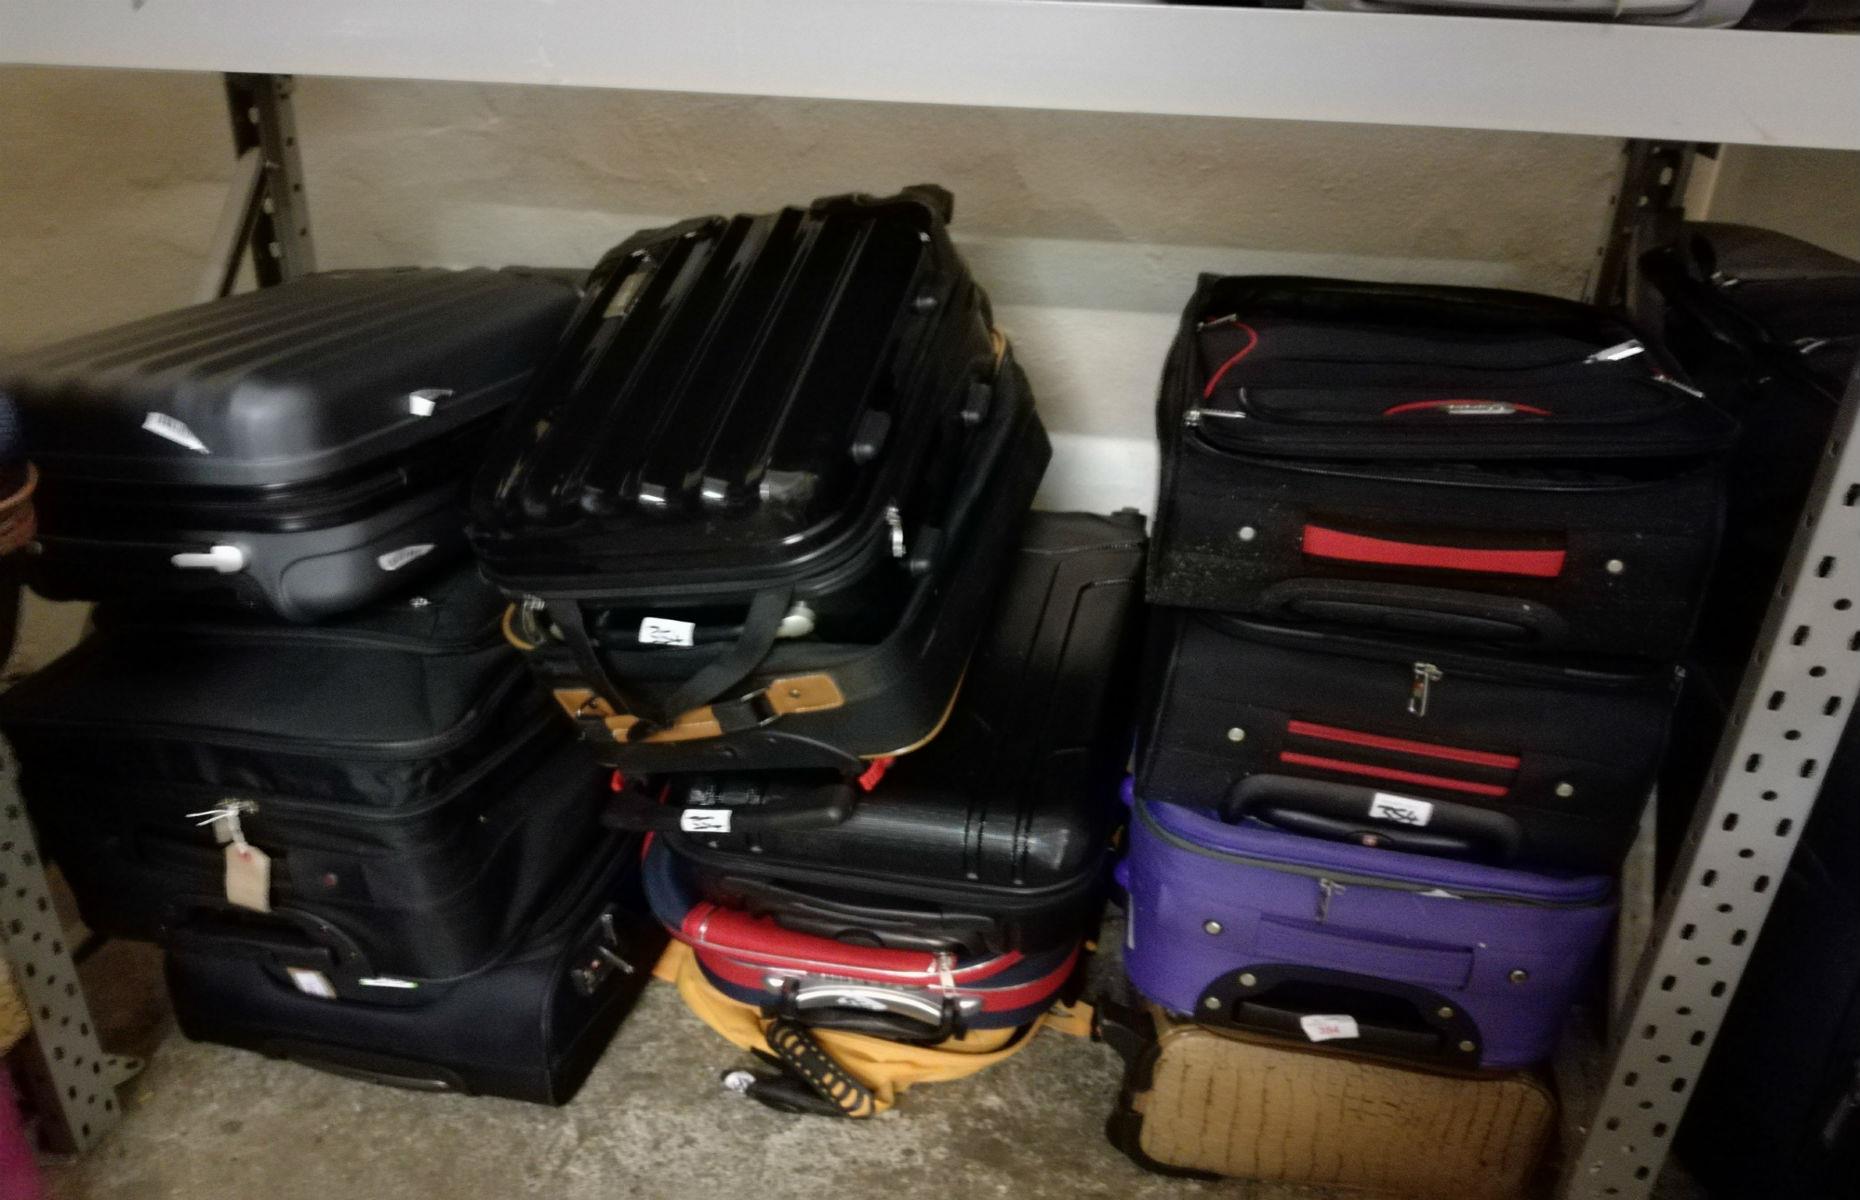 Luggage purple